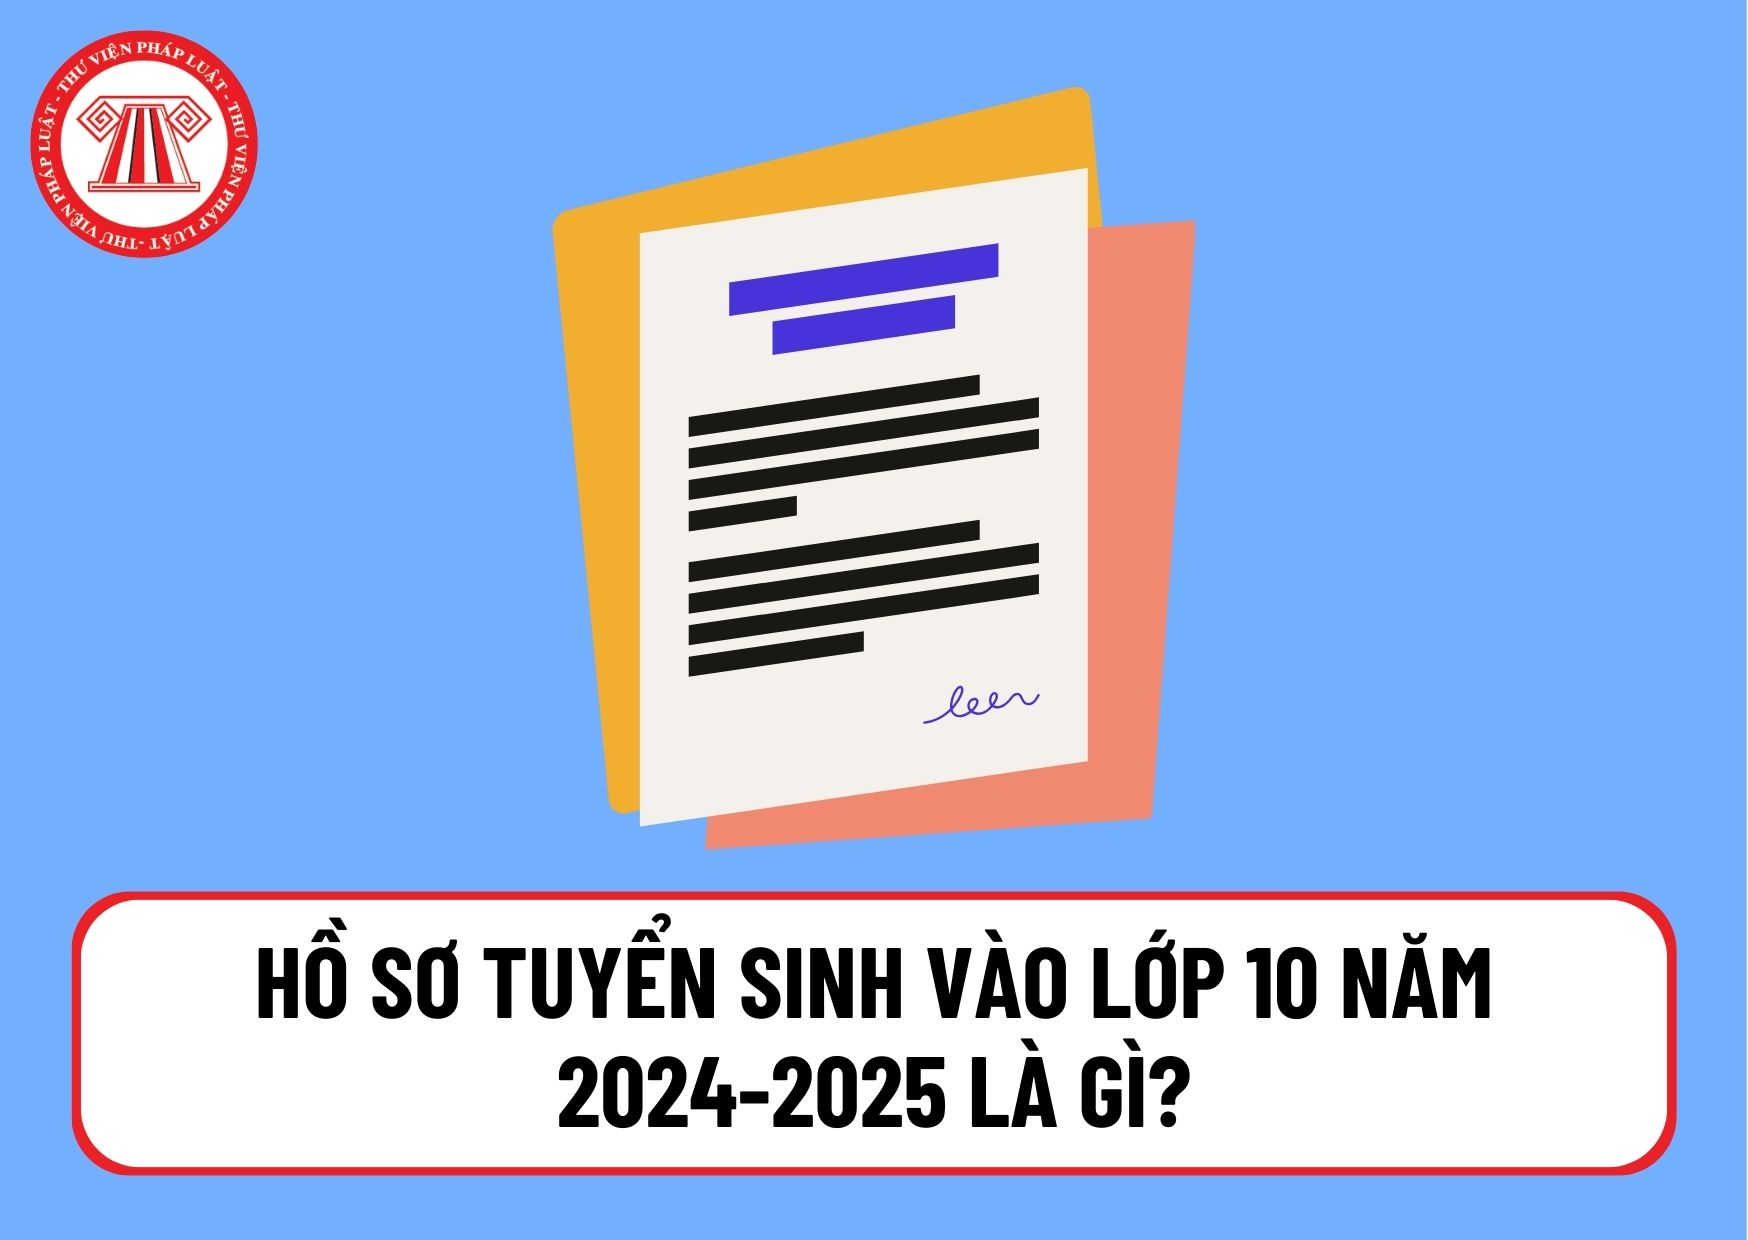 Hồ sơ tuyển sinh vào lớp 10 năm 2024-2025 là gì? Ai được tuyển thẳng hoặc có chế độ ưu tiên khi tuyển sinh vào lớp 10?